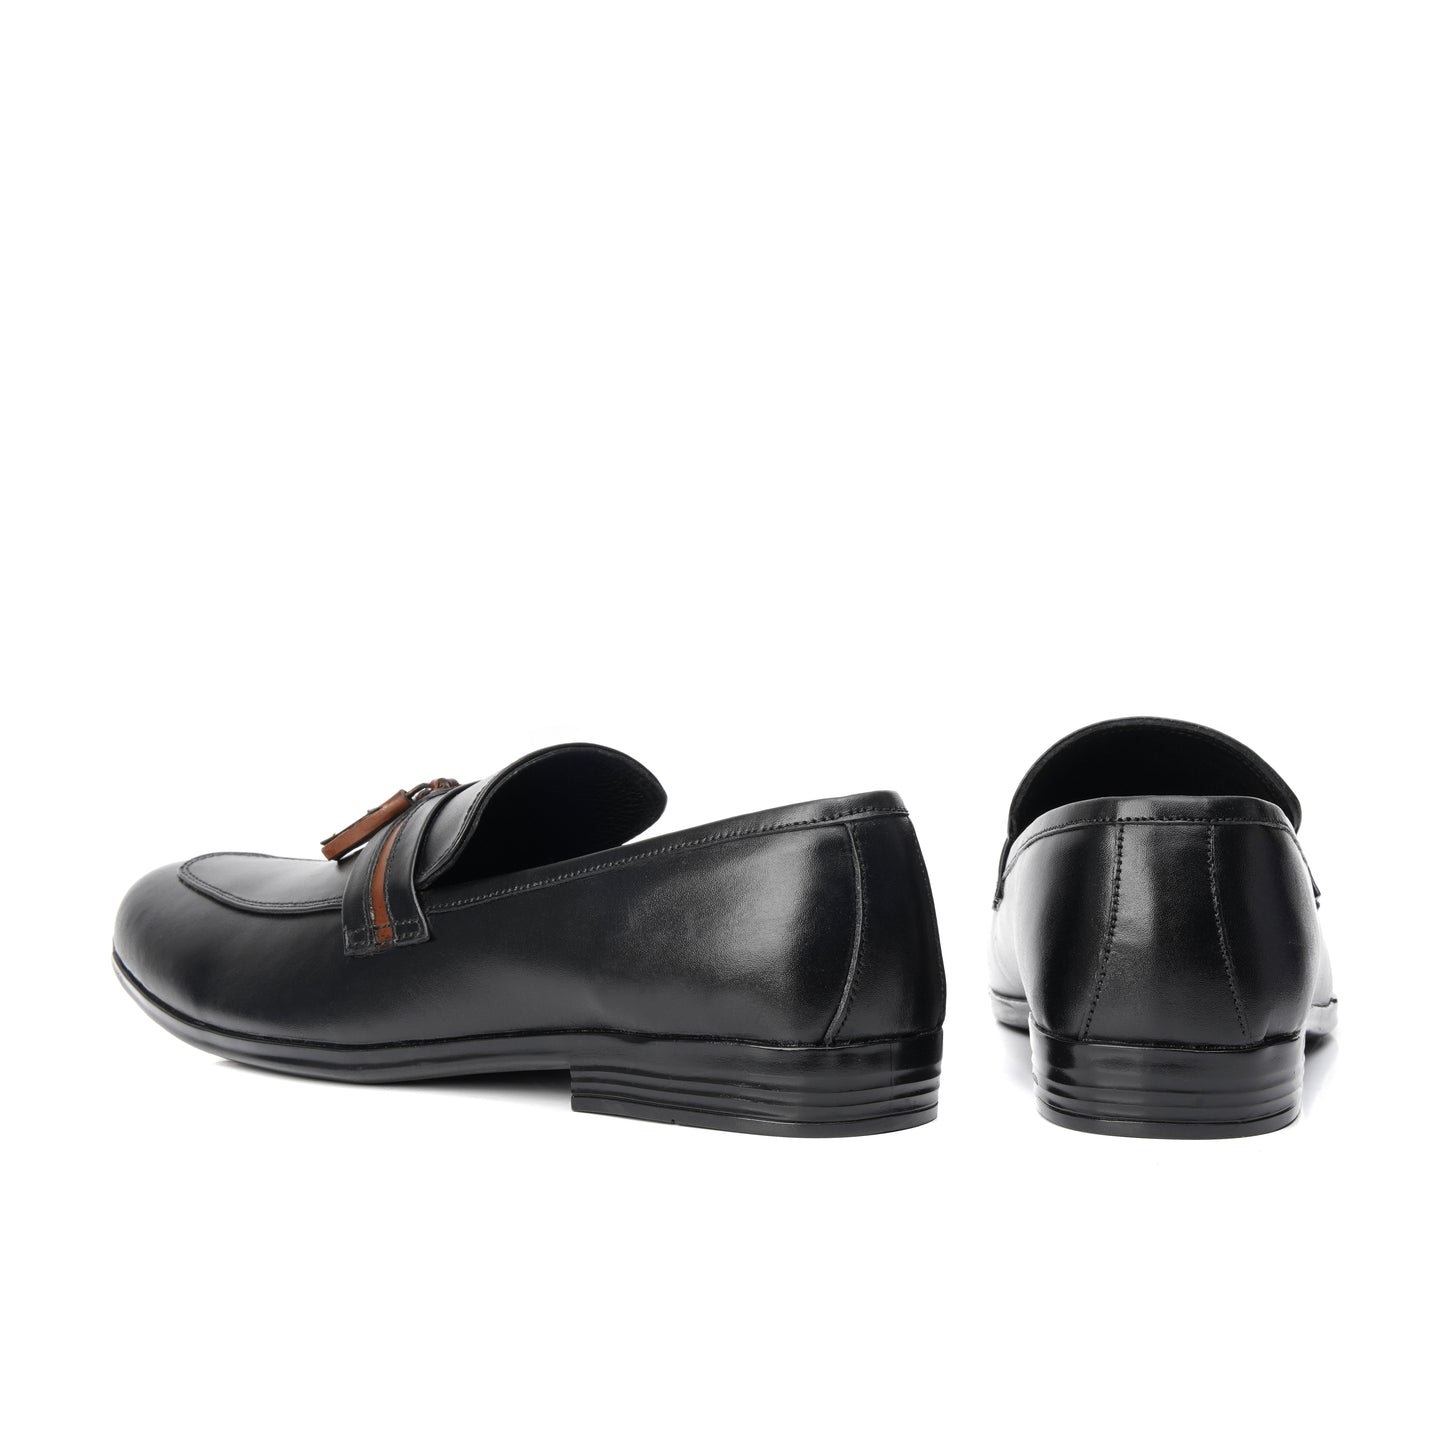 803-Black Royal Tassel loafer